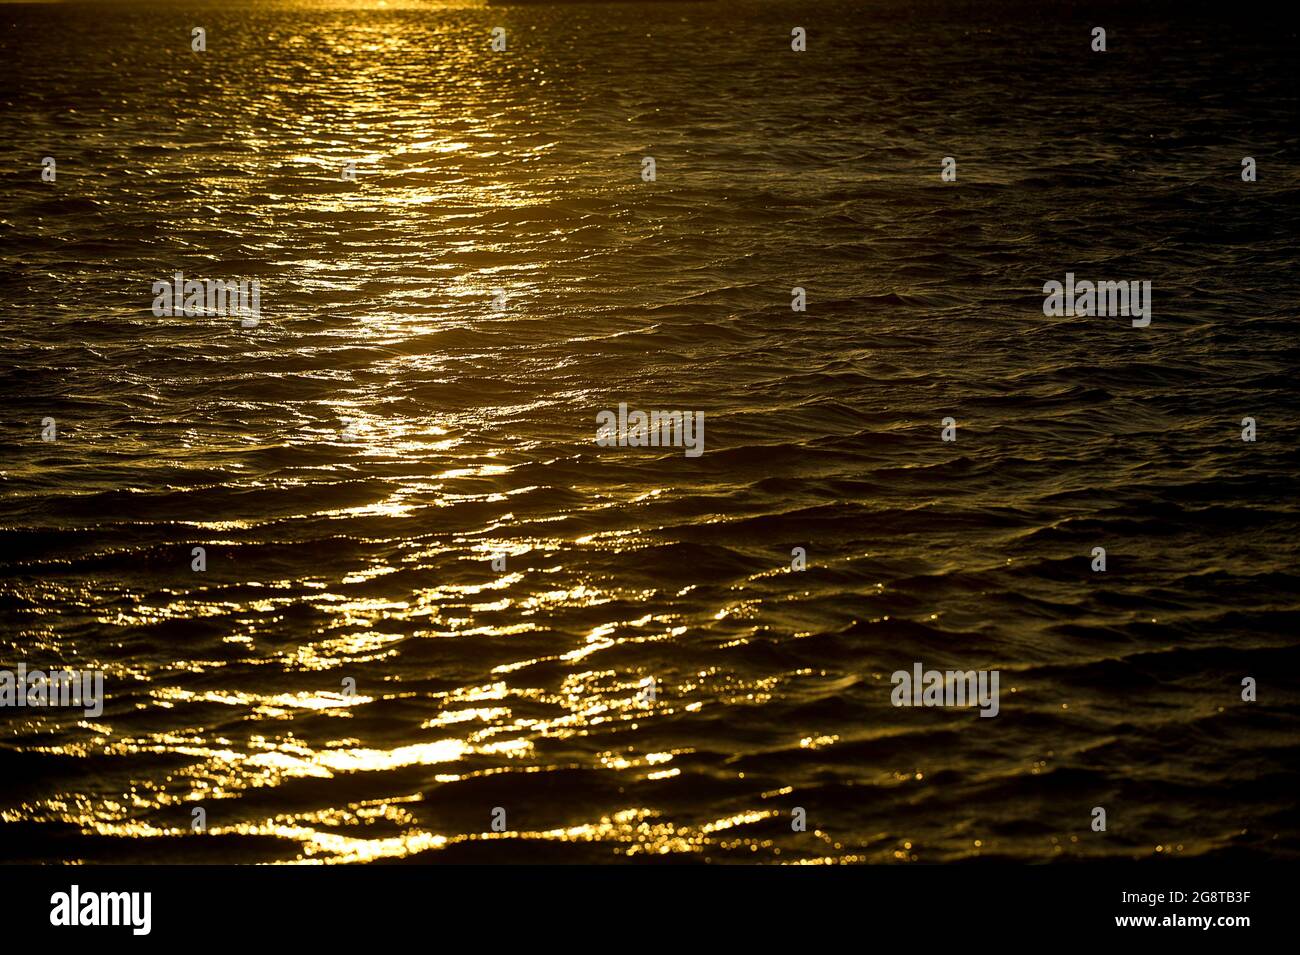 sun reflecting on water, Australia Stock Photo